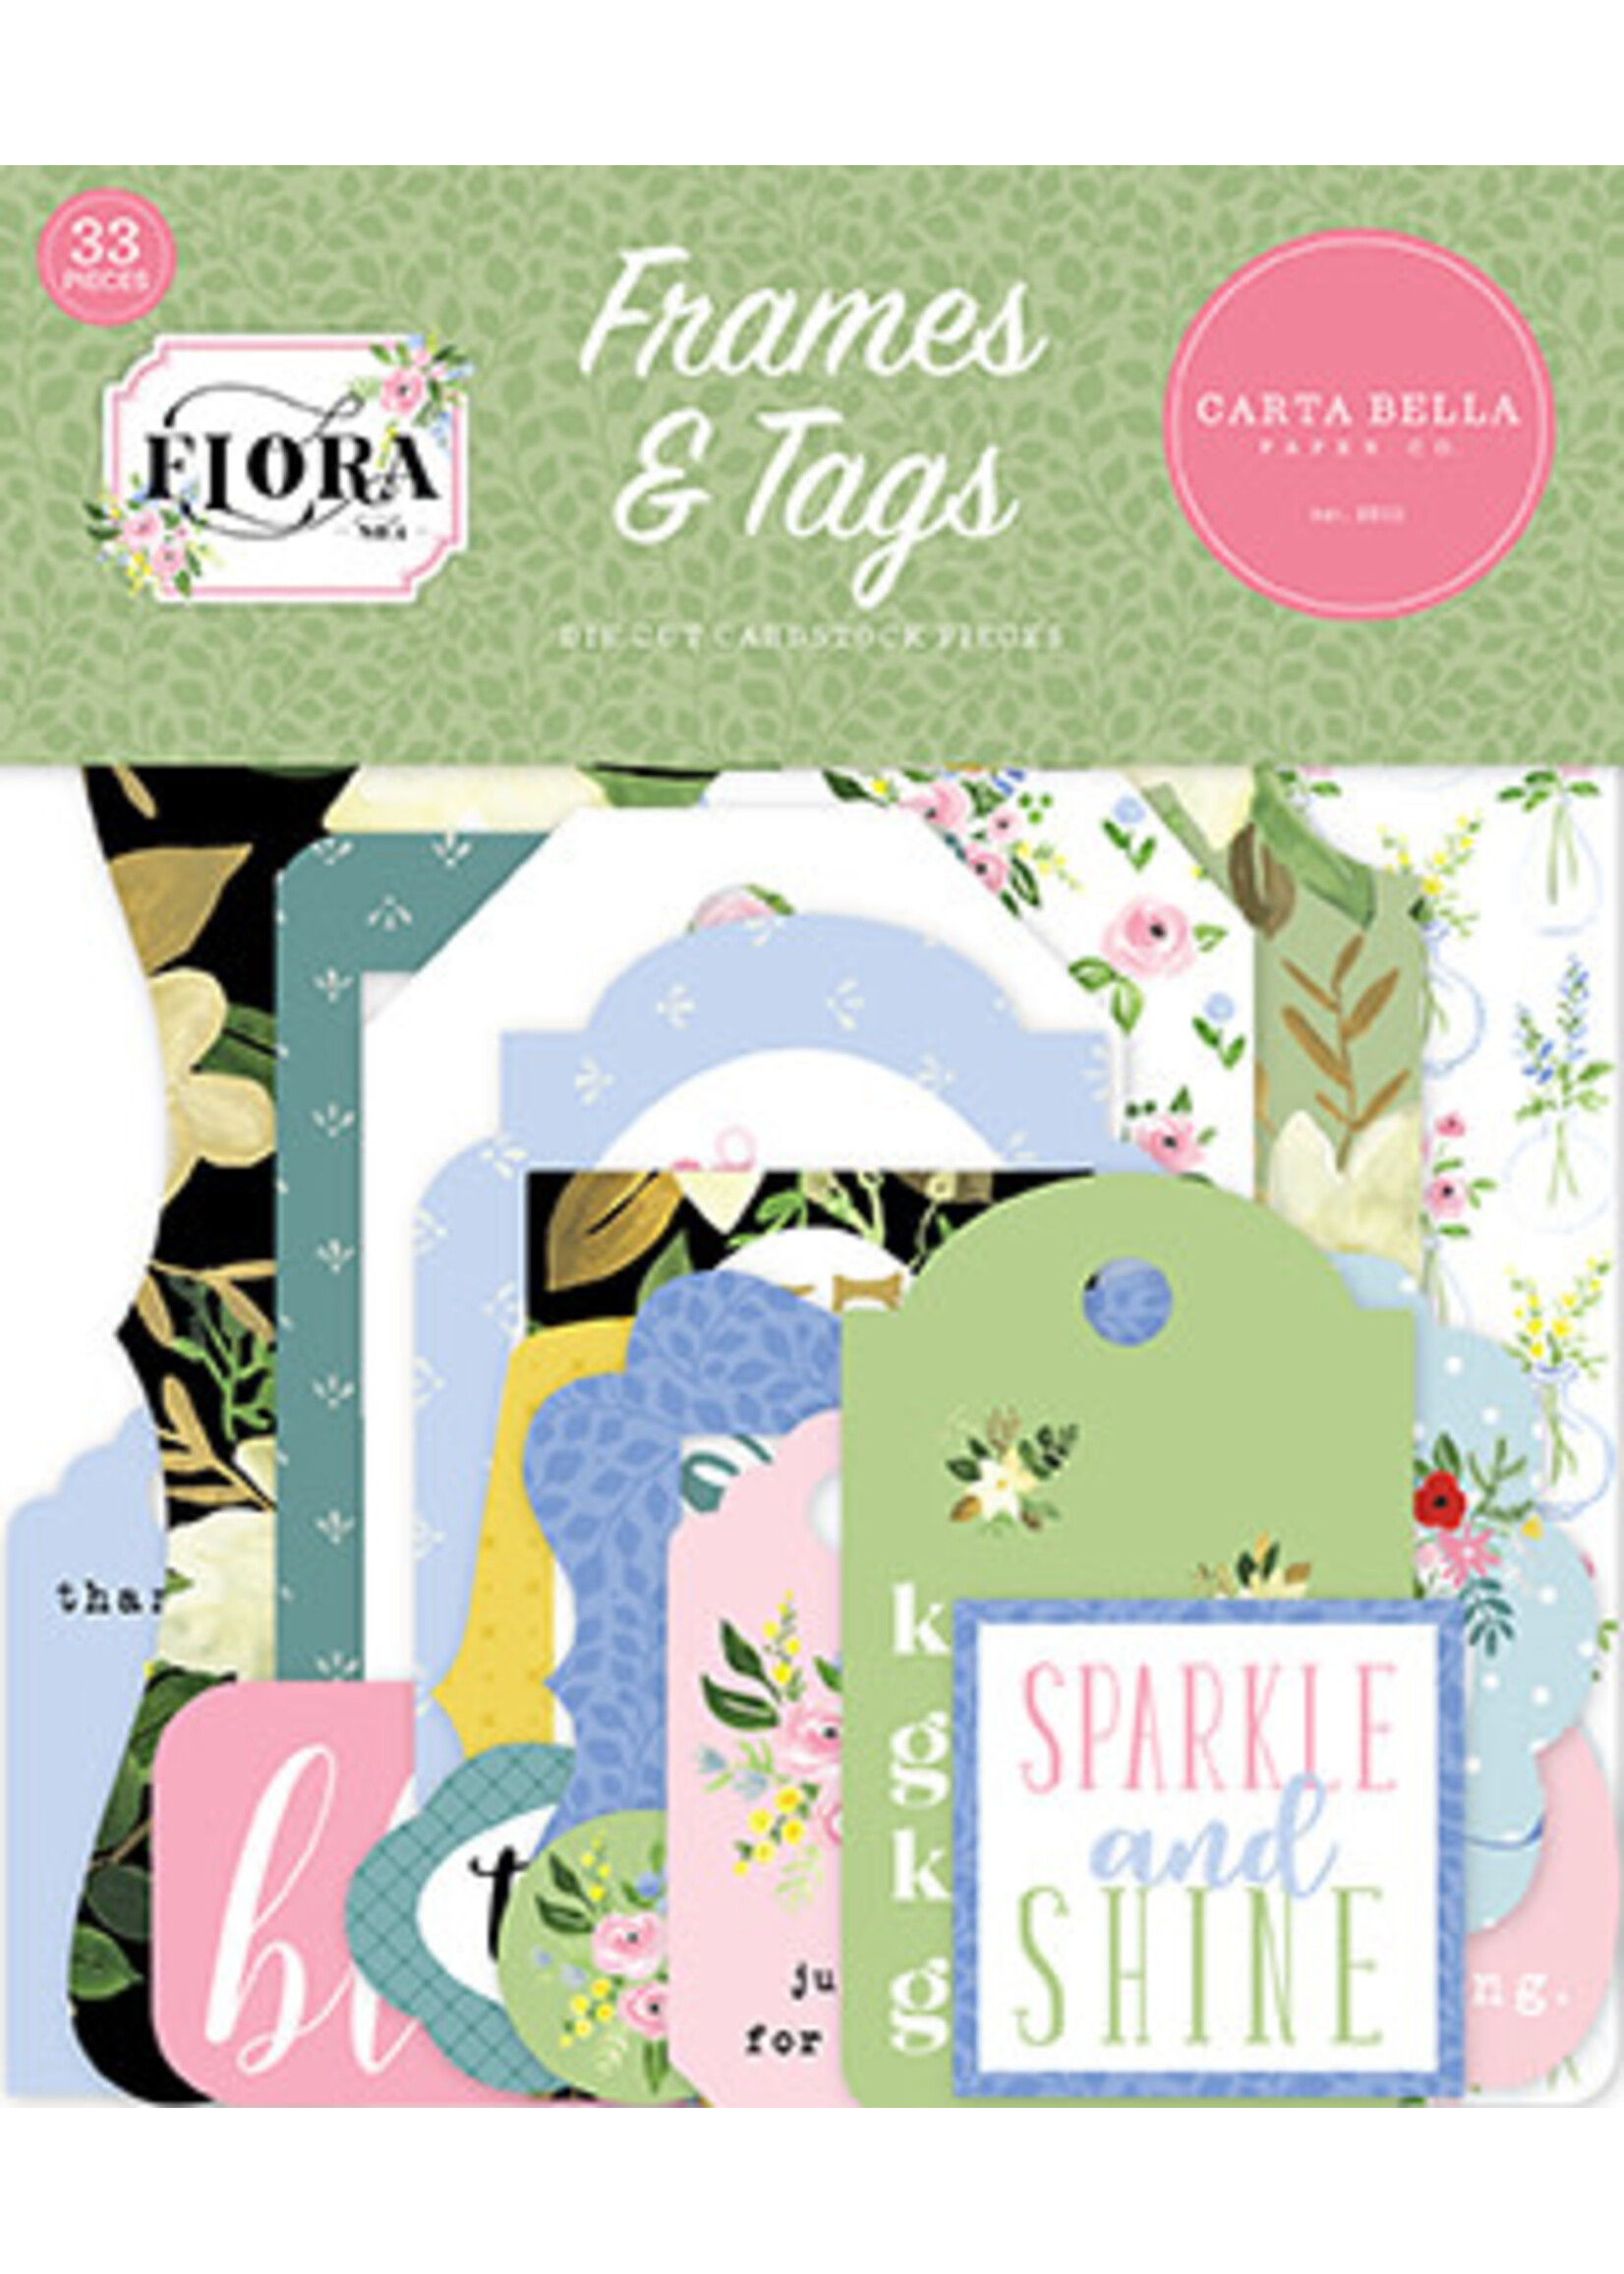 Carta Bella Flora No4:Frames & Tags